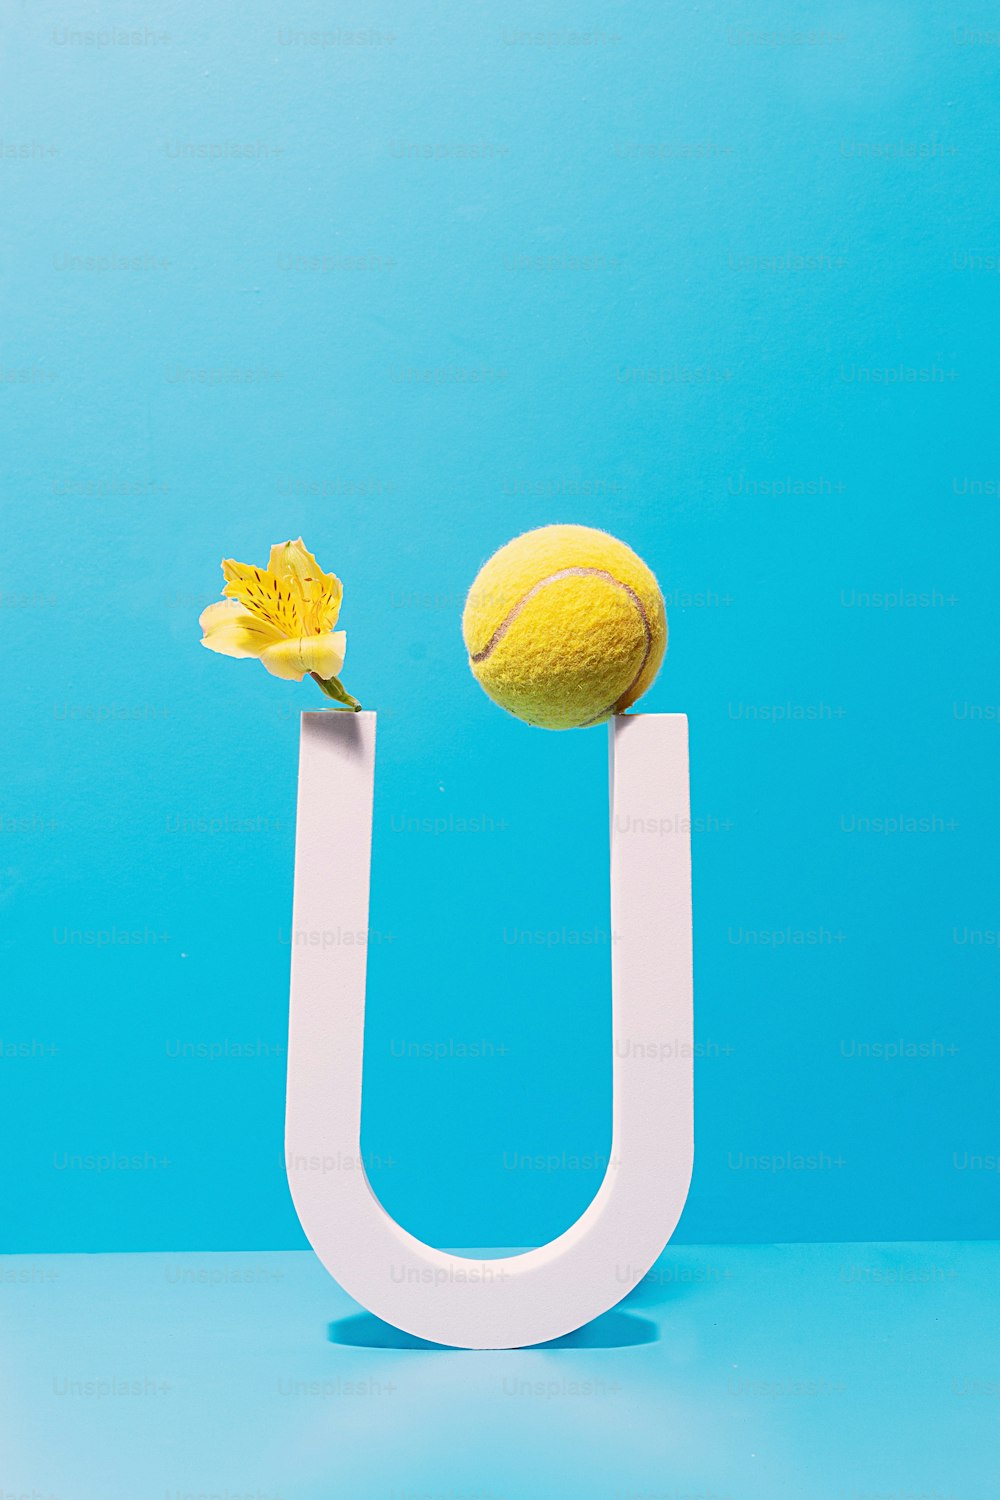 una flor amarilla y una pelota de tenis en una letra U blanca